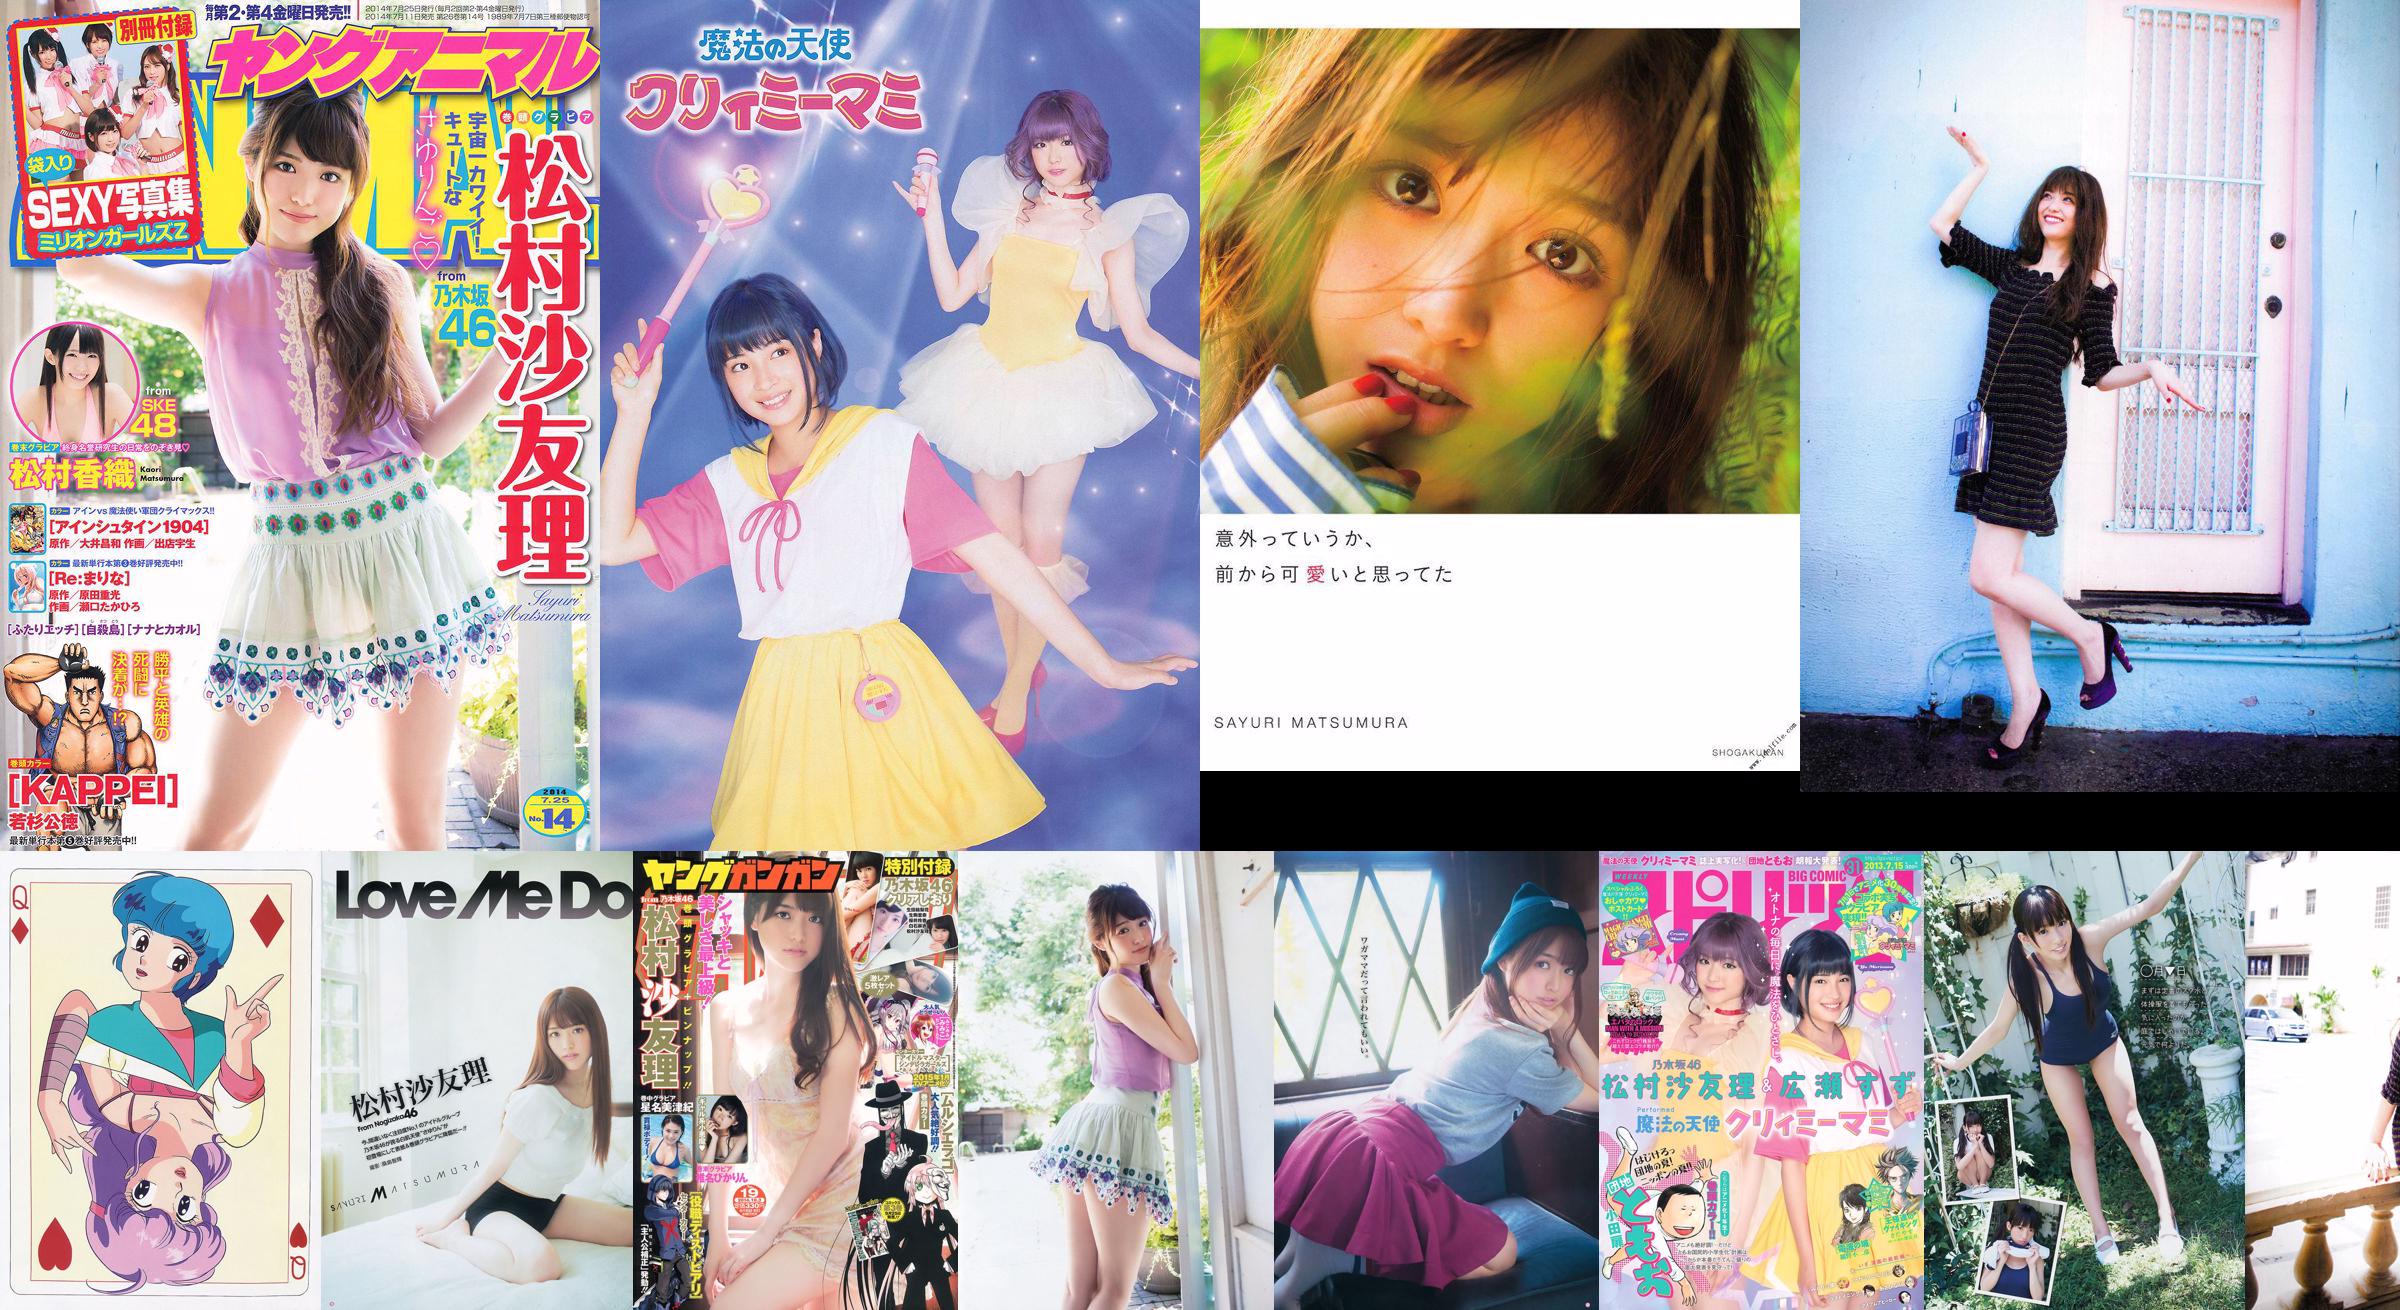 [Young Gangan] Sayuri Matsumura Hoshina Mizuki Shiina Pikarin Amaki Tháng 6 năm 2014 No.19 Ảnh No.4f1dcc Trang 10